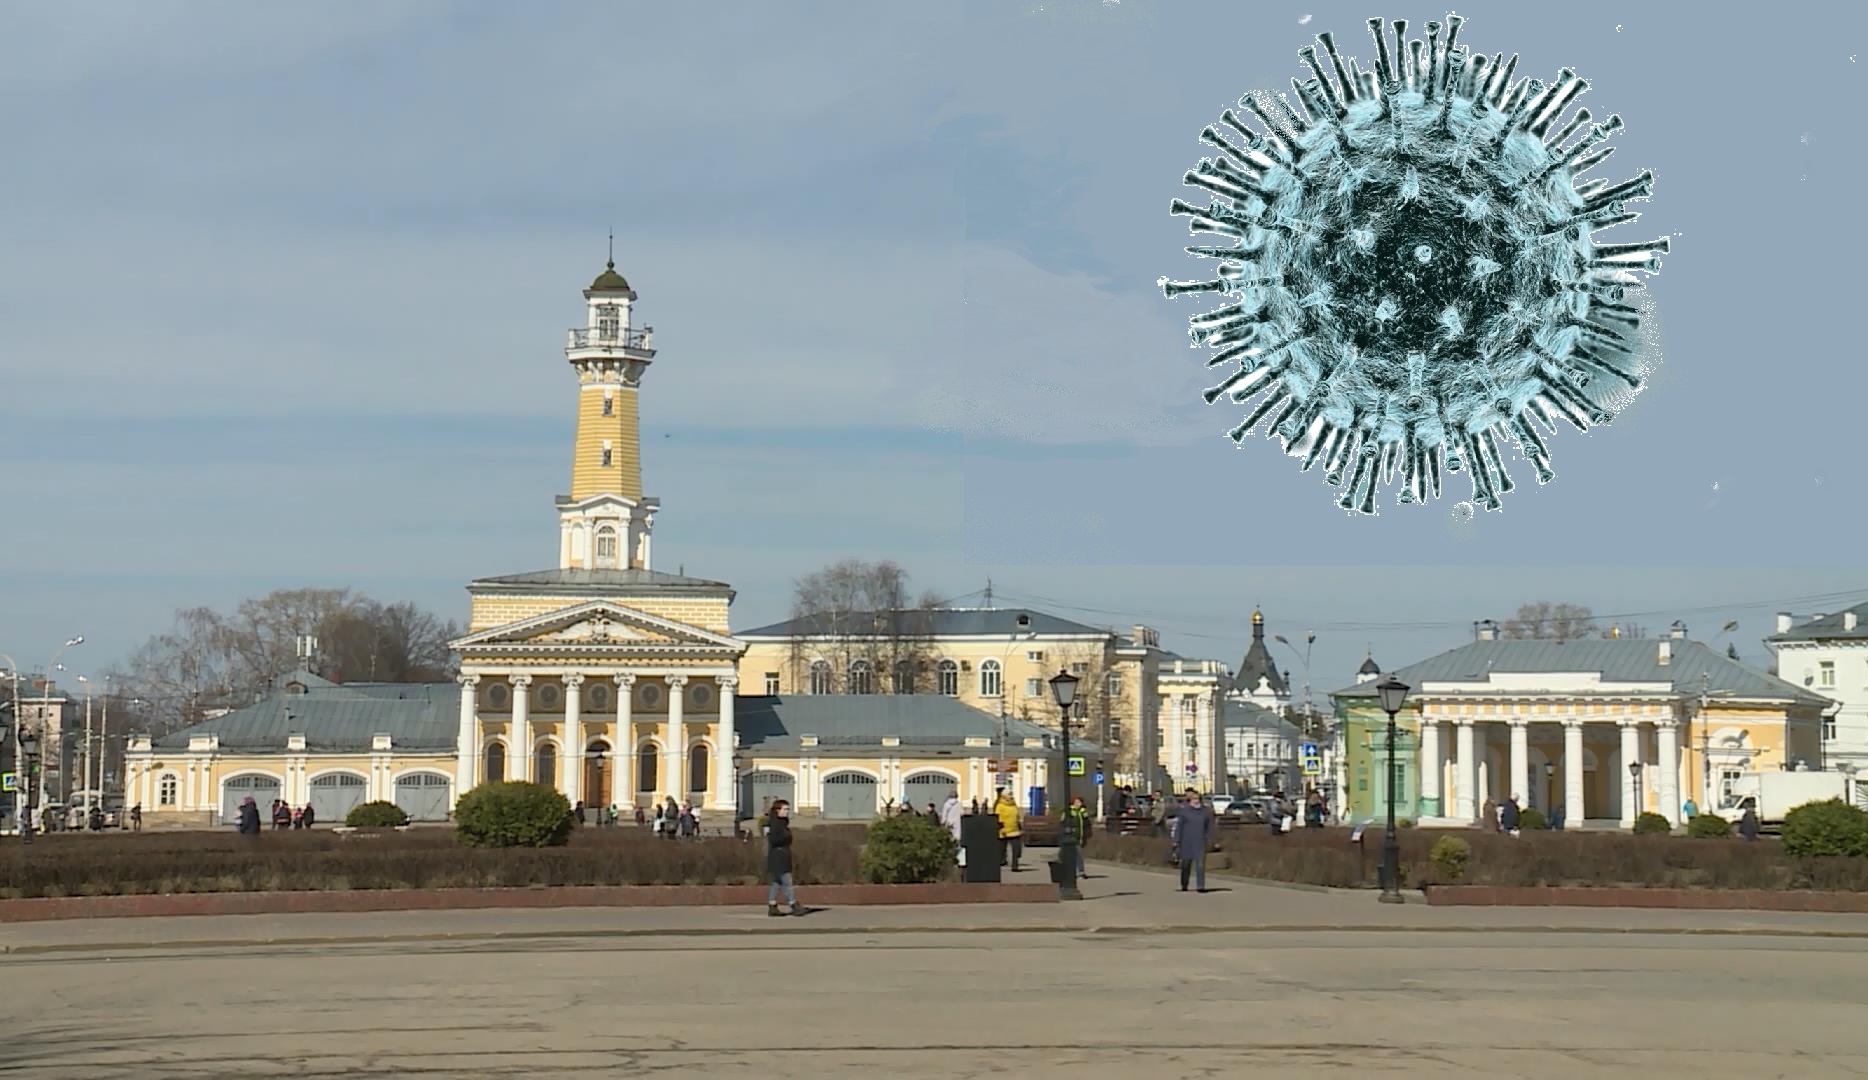 Хроники вируса. Как развивалась ситуация с CoVID-19 в Костромской области?